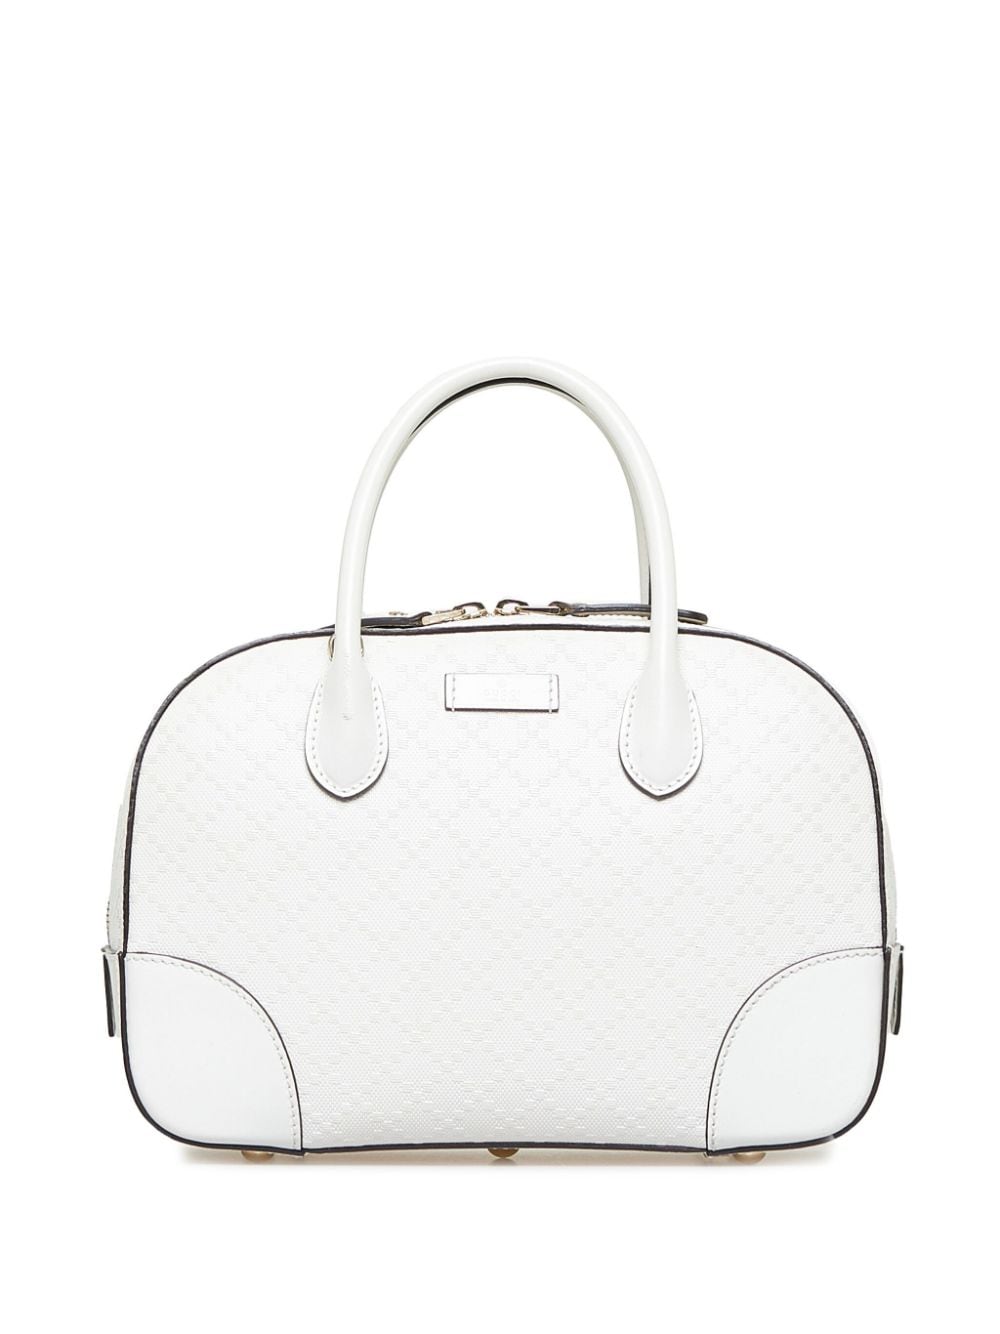 Pre-owned Gucci 2013 Diamante Bright Two-way Handbag In White